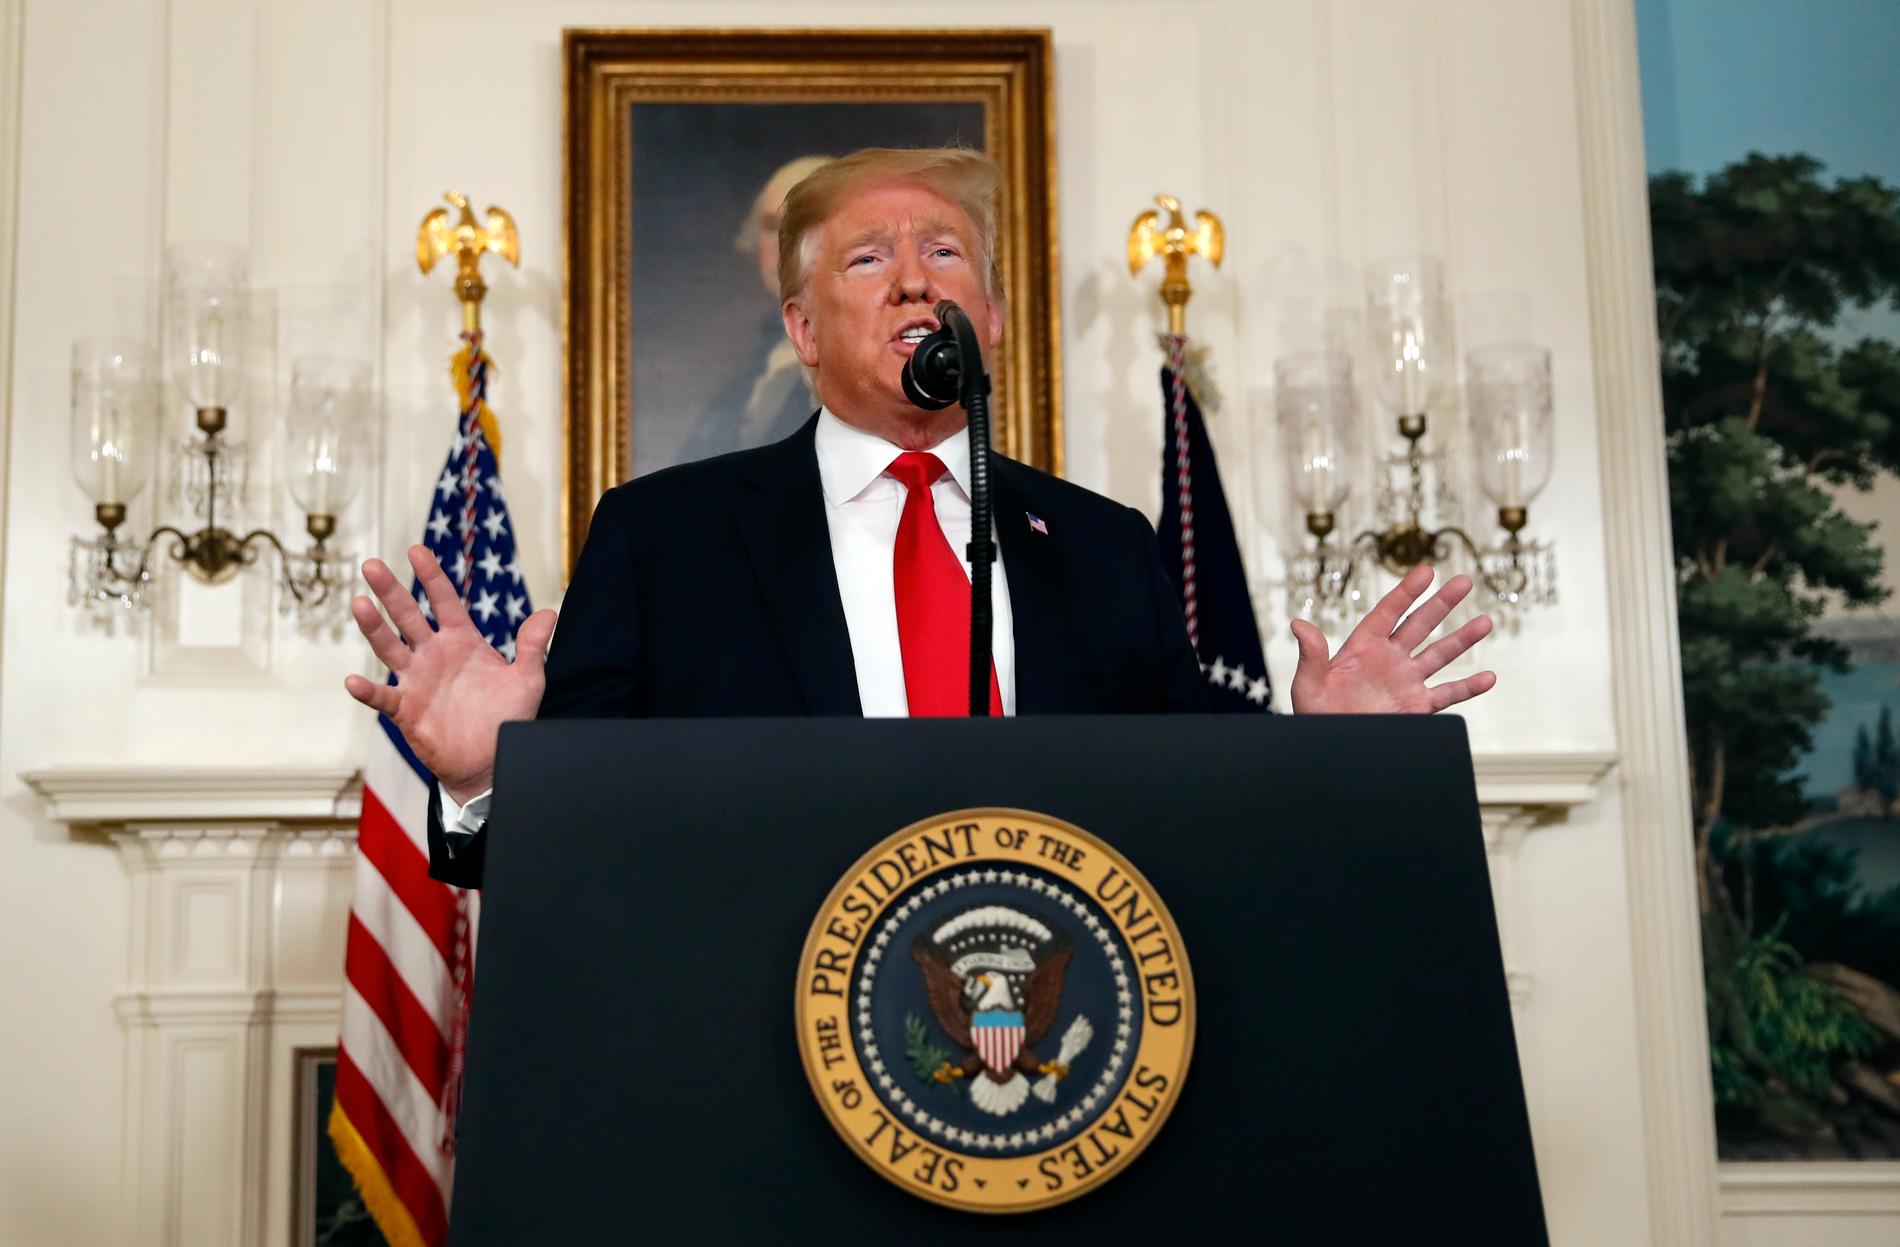 President Donald Trump lägger i ett tal fram en kompromiss som han hoppas ska ge USA en ny budget med finansiering av en mur mot Mexiko.